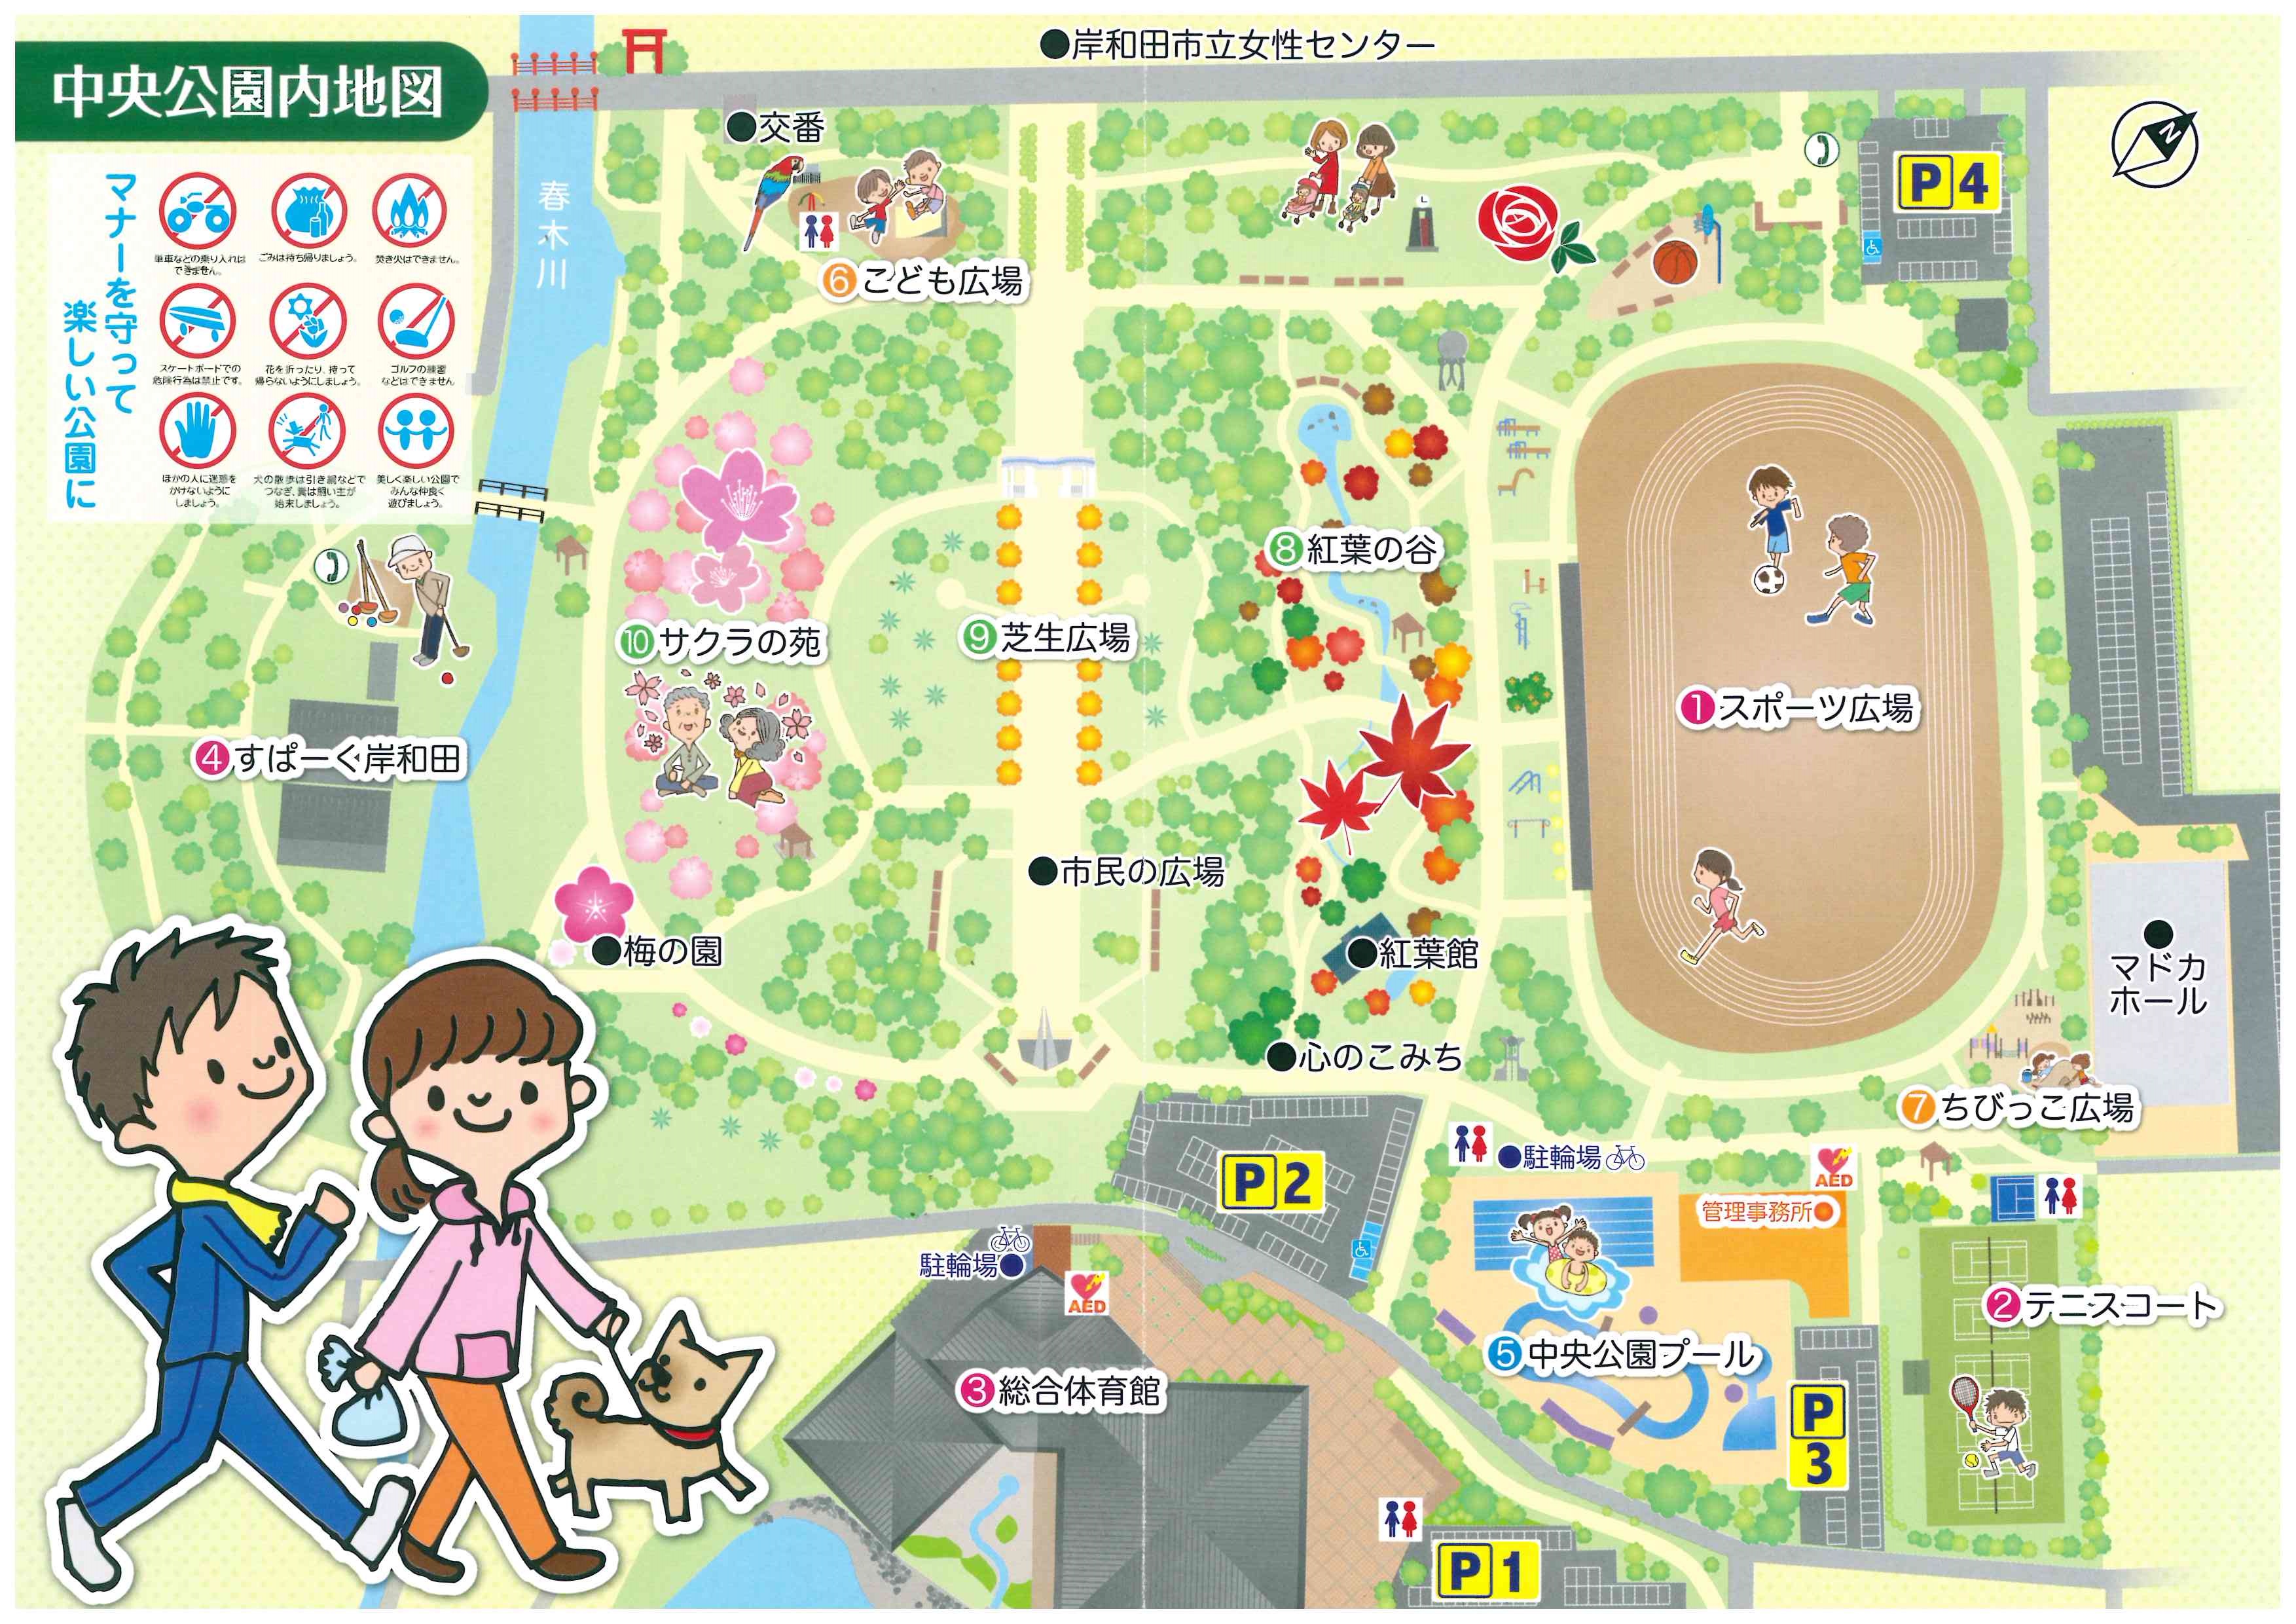 中央公園ガイドマップ 一般財団法人 岸和田市公園緑化協会